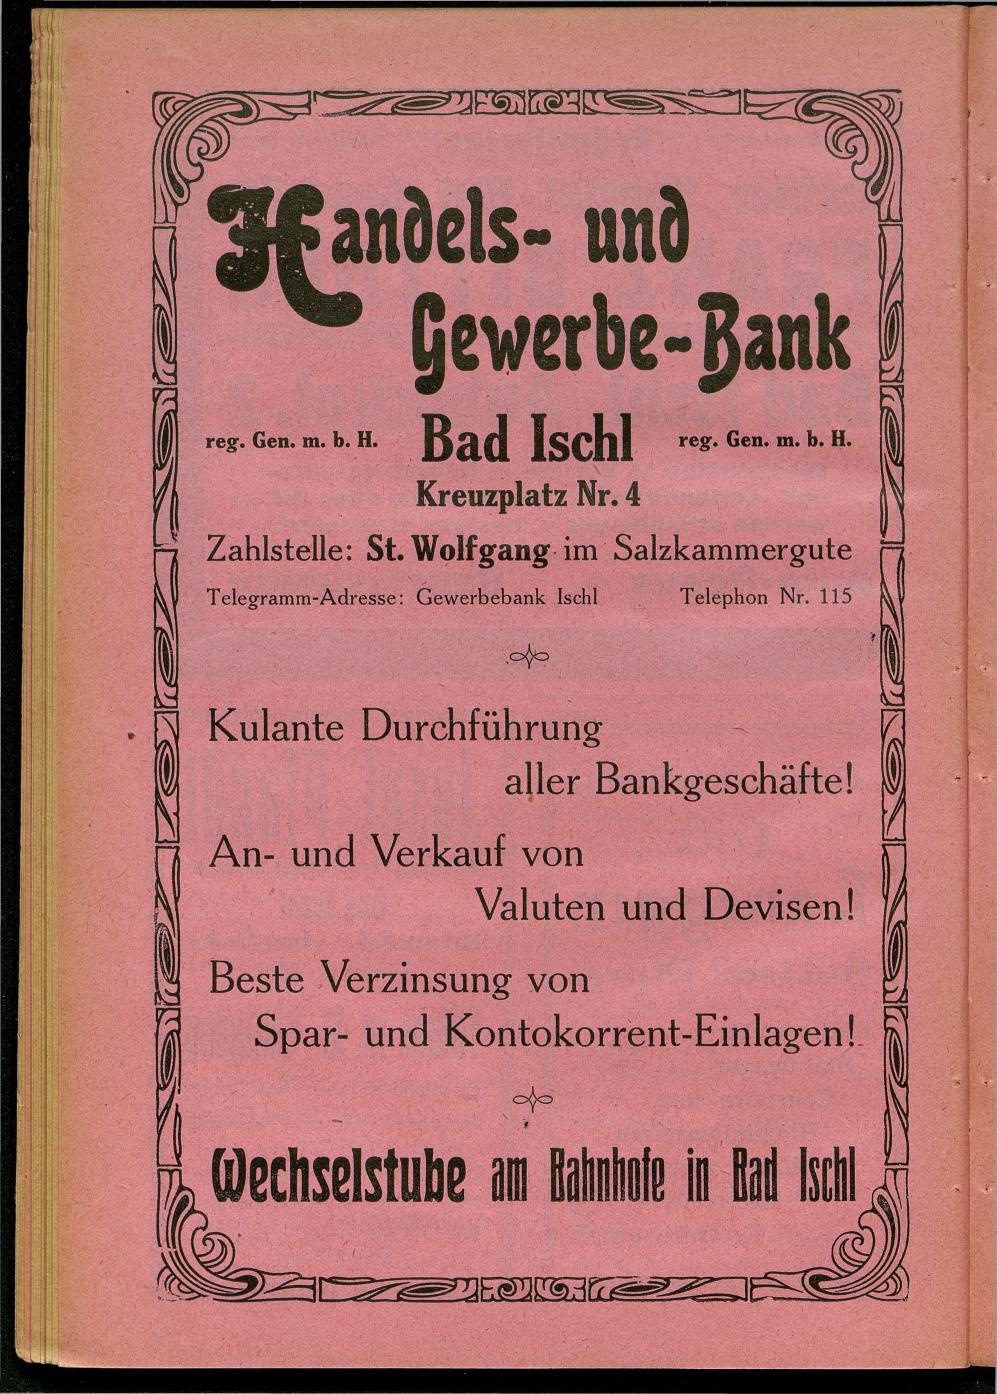 Handels- und Gewerbe-Adressbuch nebst Häuser-Verzeichnis der Kurortsgemeinde Bad Ischl 1925 - Seite 70